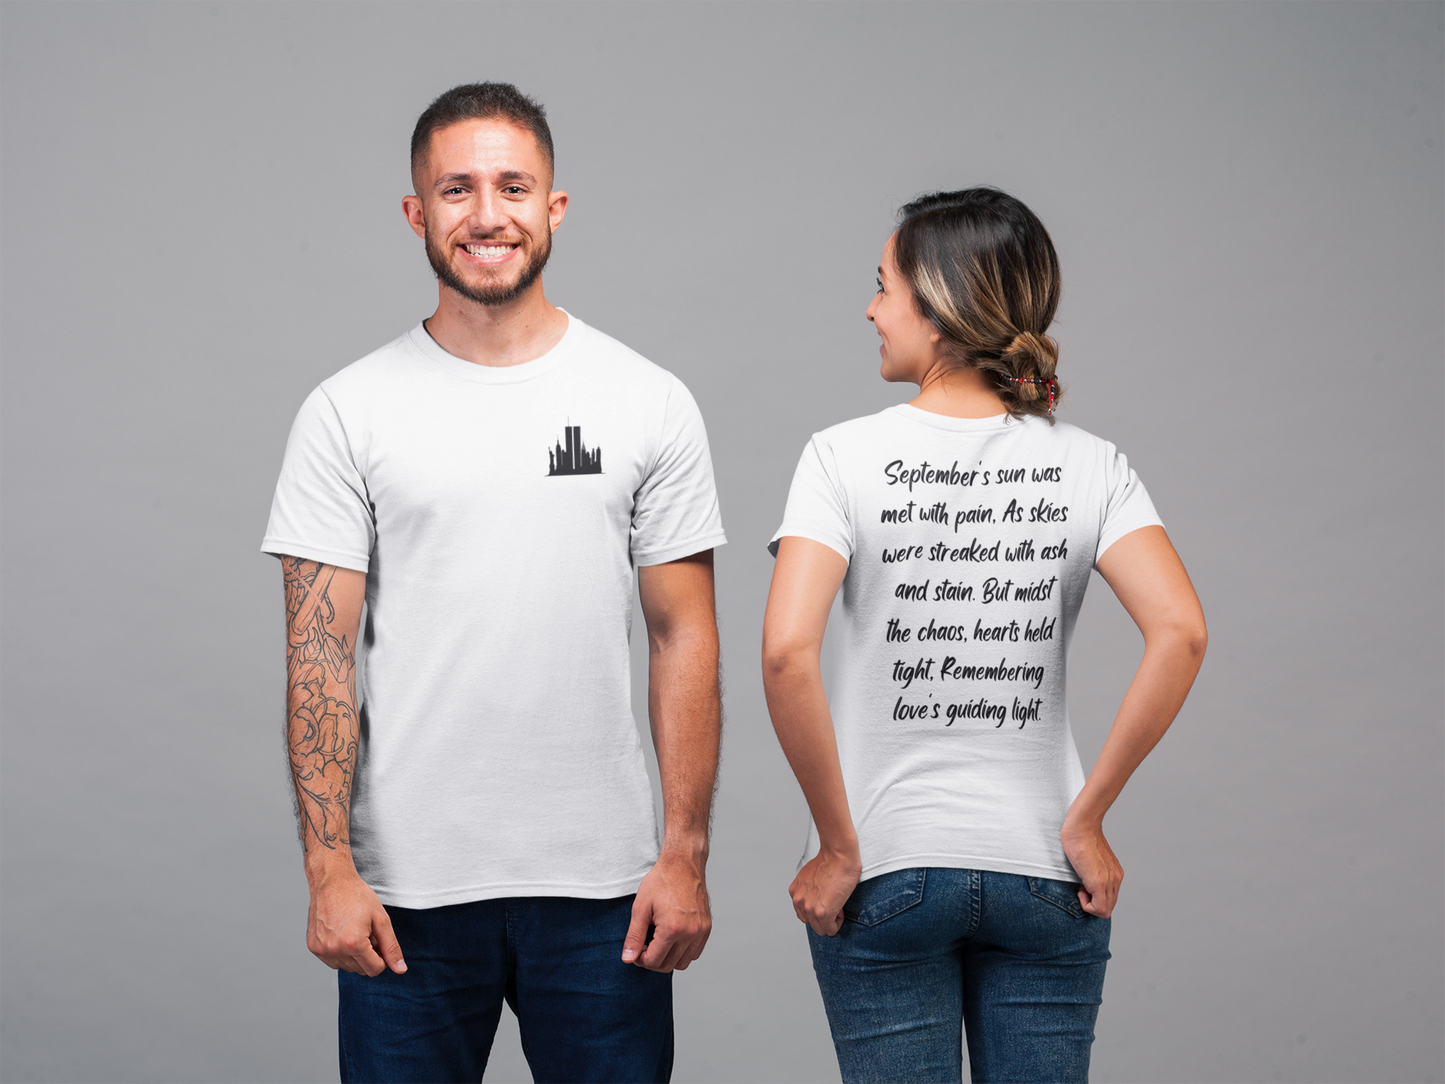 Recuerda siempre, un poema de recuerdo - Camiseta unisex para hombre y mujer